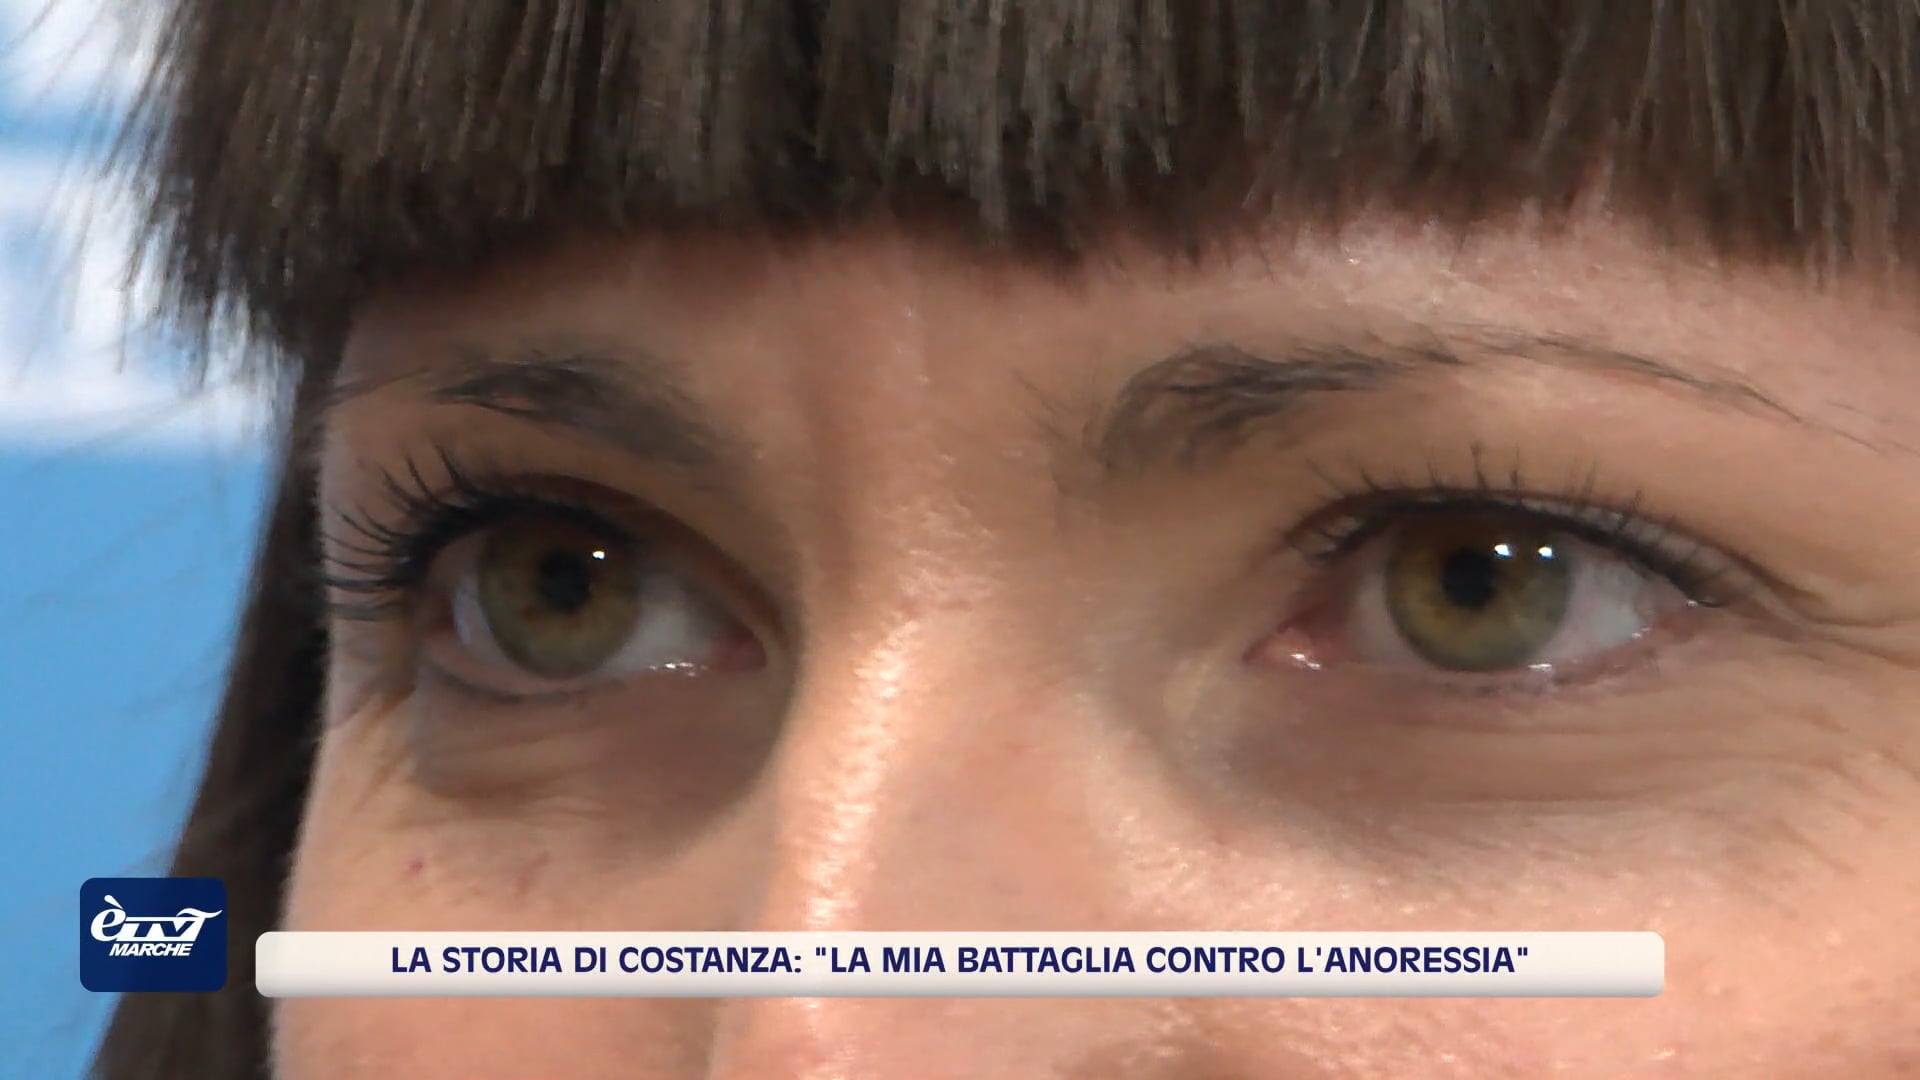 La battaglia contro l'anoressia, la testimonianza di Costanza in un libro - VIDEO